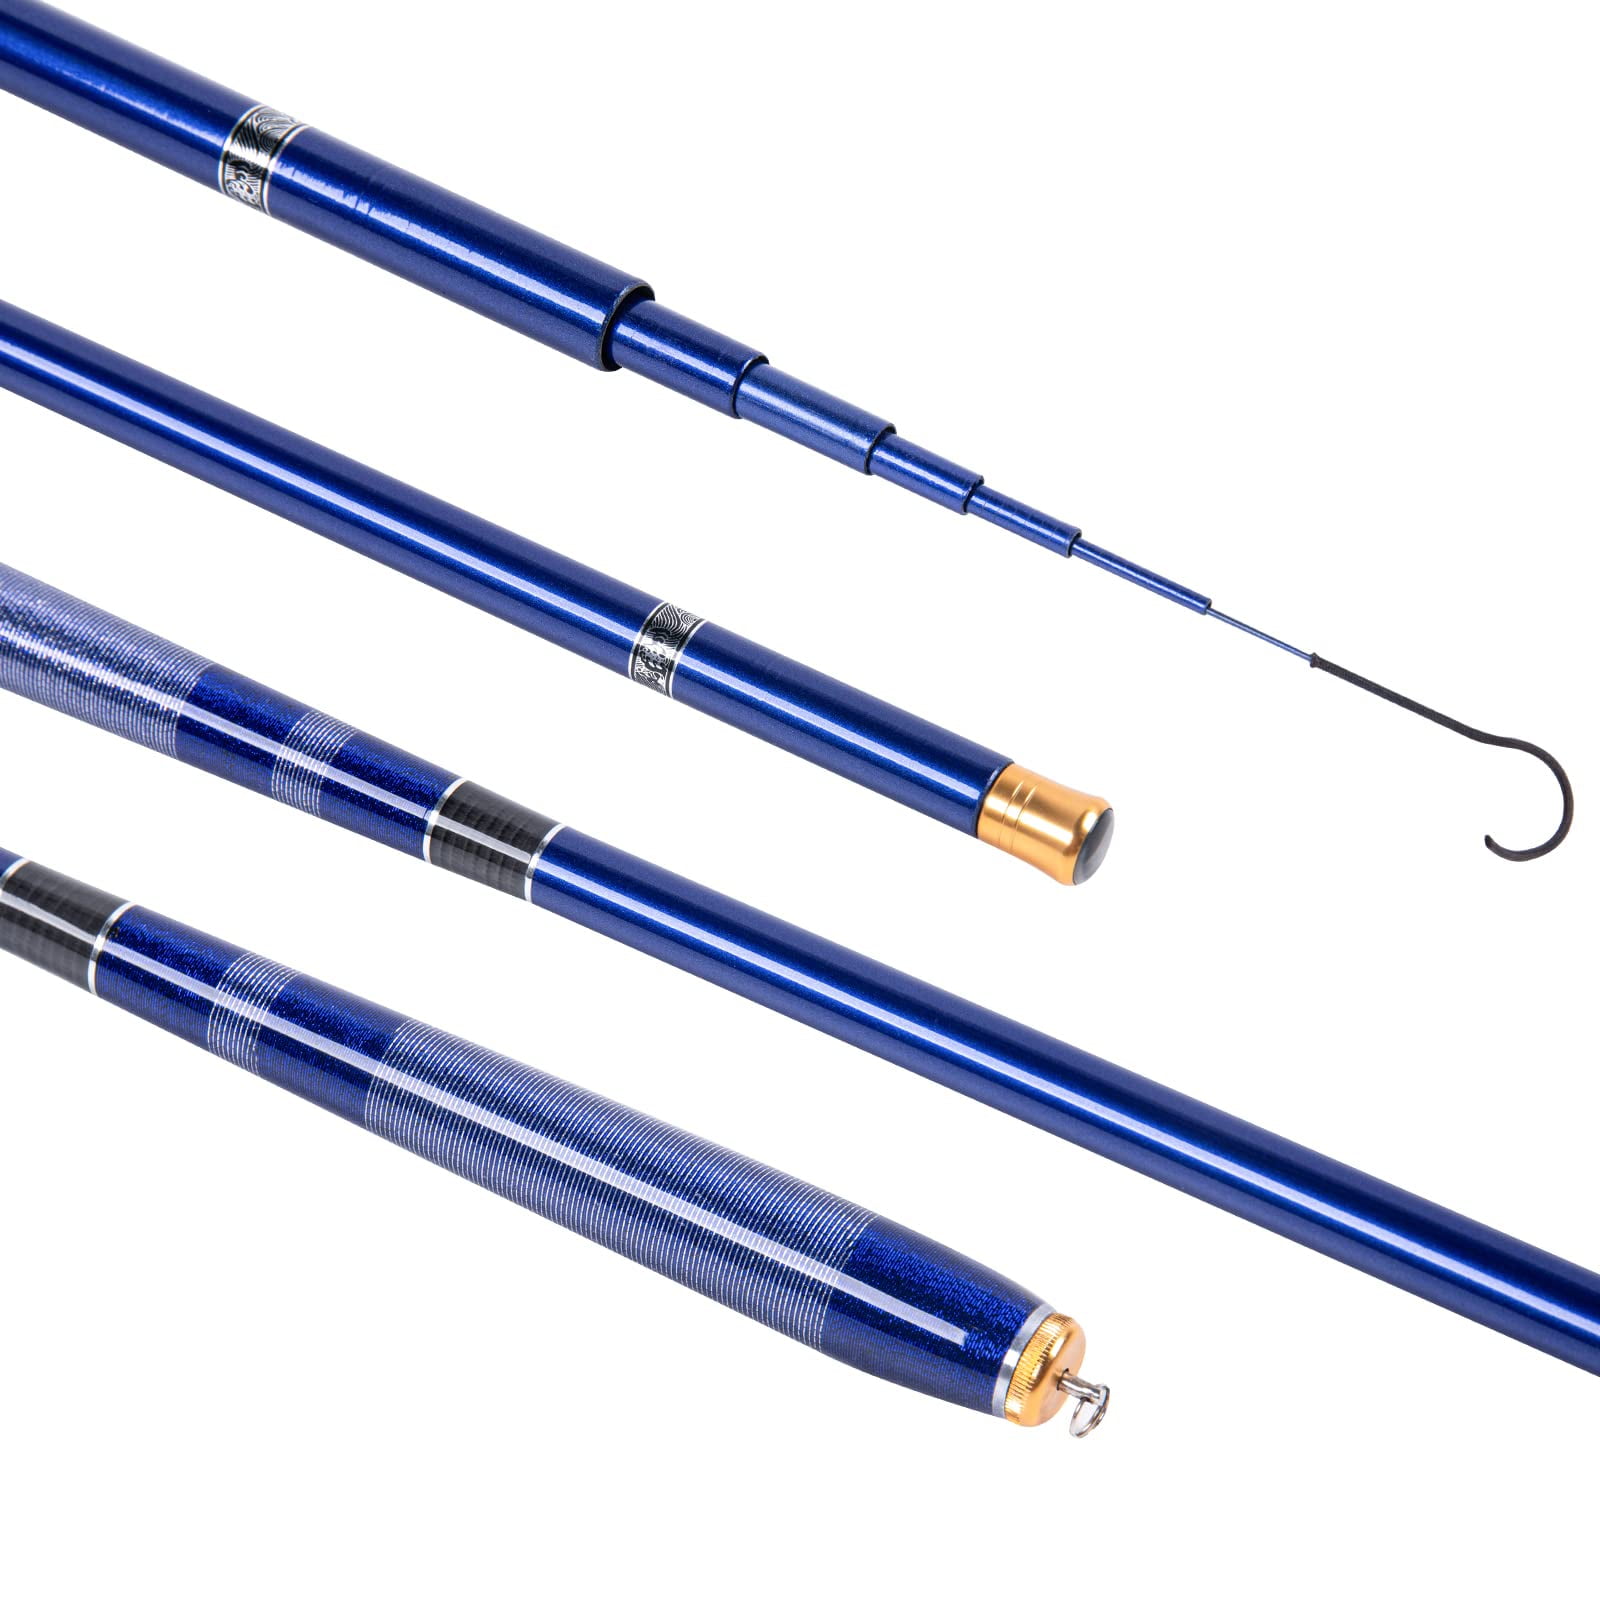 Goture 1.8m-3.6m Telescopic Fishing Rod Carbon Fiber Ultra  Light Fishing Pole Portable Travel Rod Stream Carp Fishing 